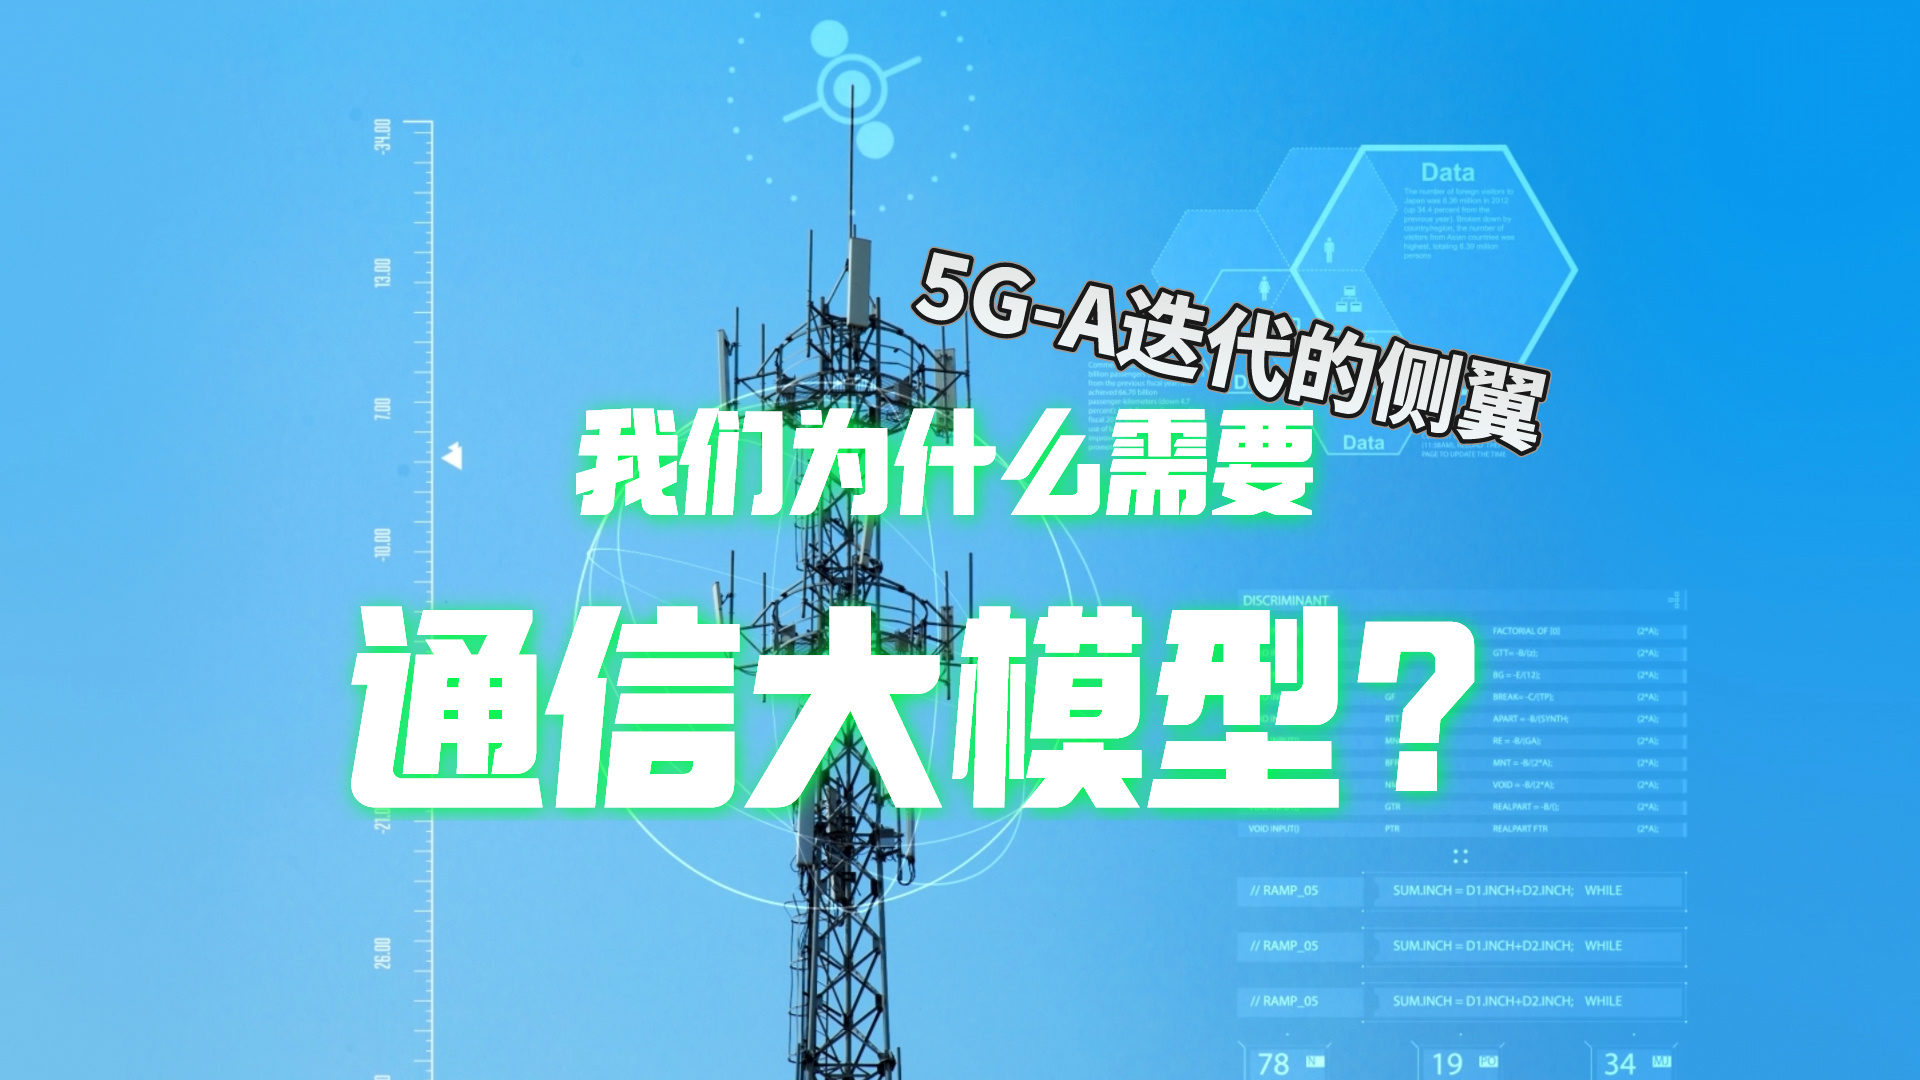 華為首發通信大模型，推動運營商在5G-A時代獲得商業成功